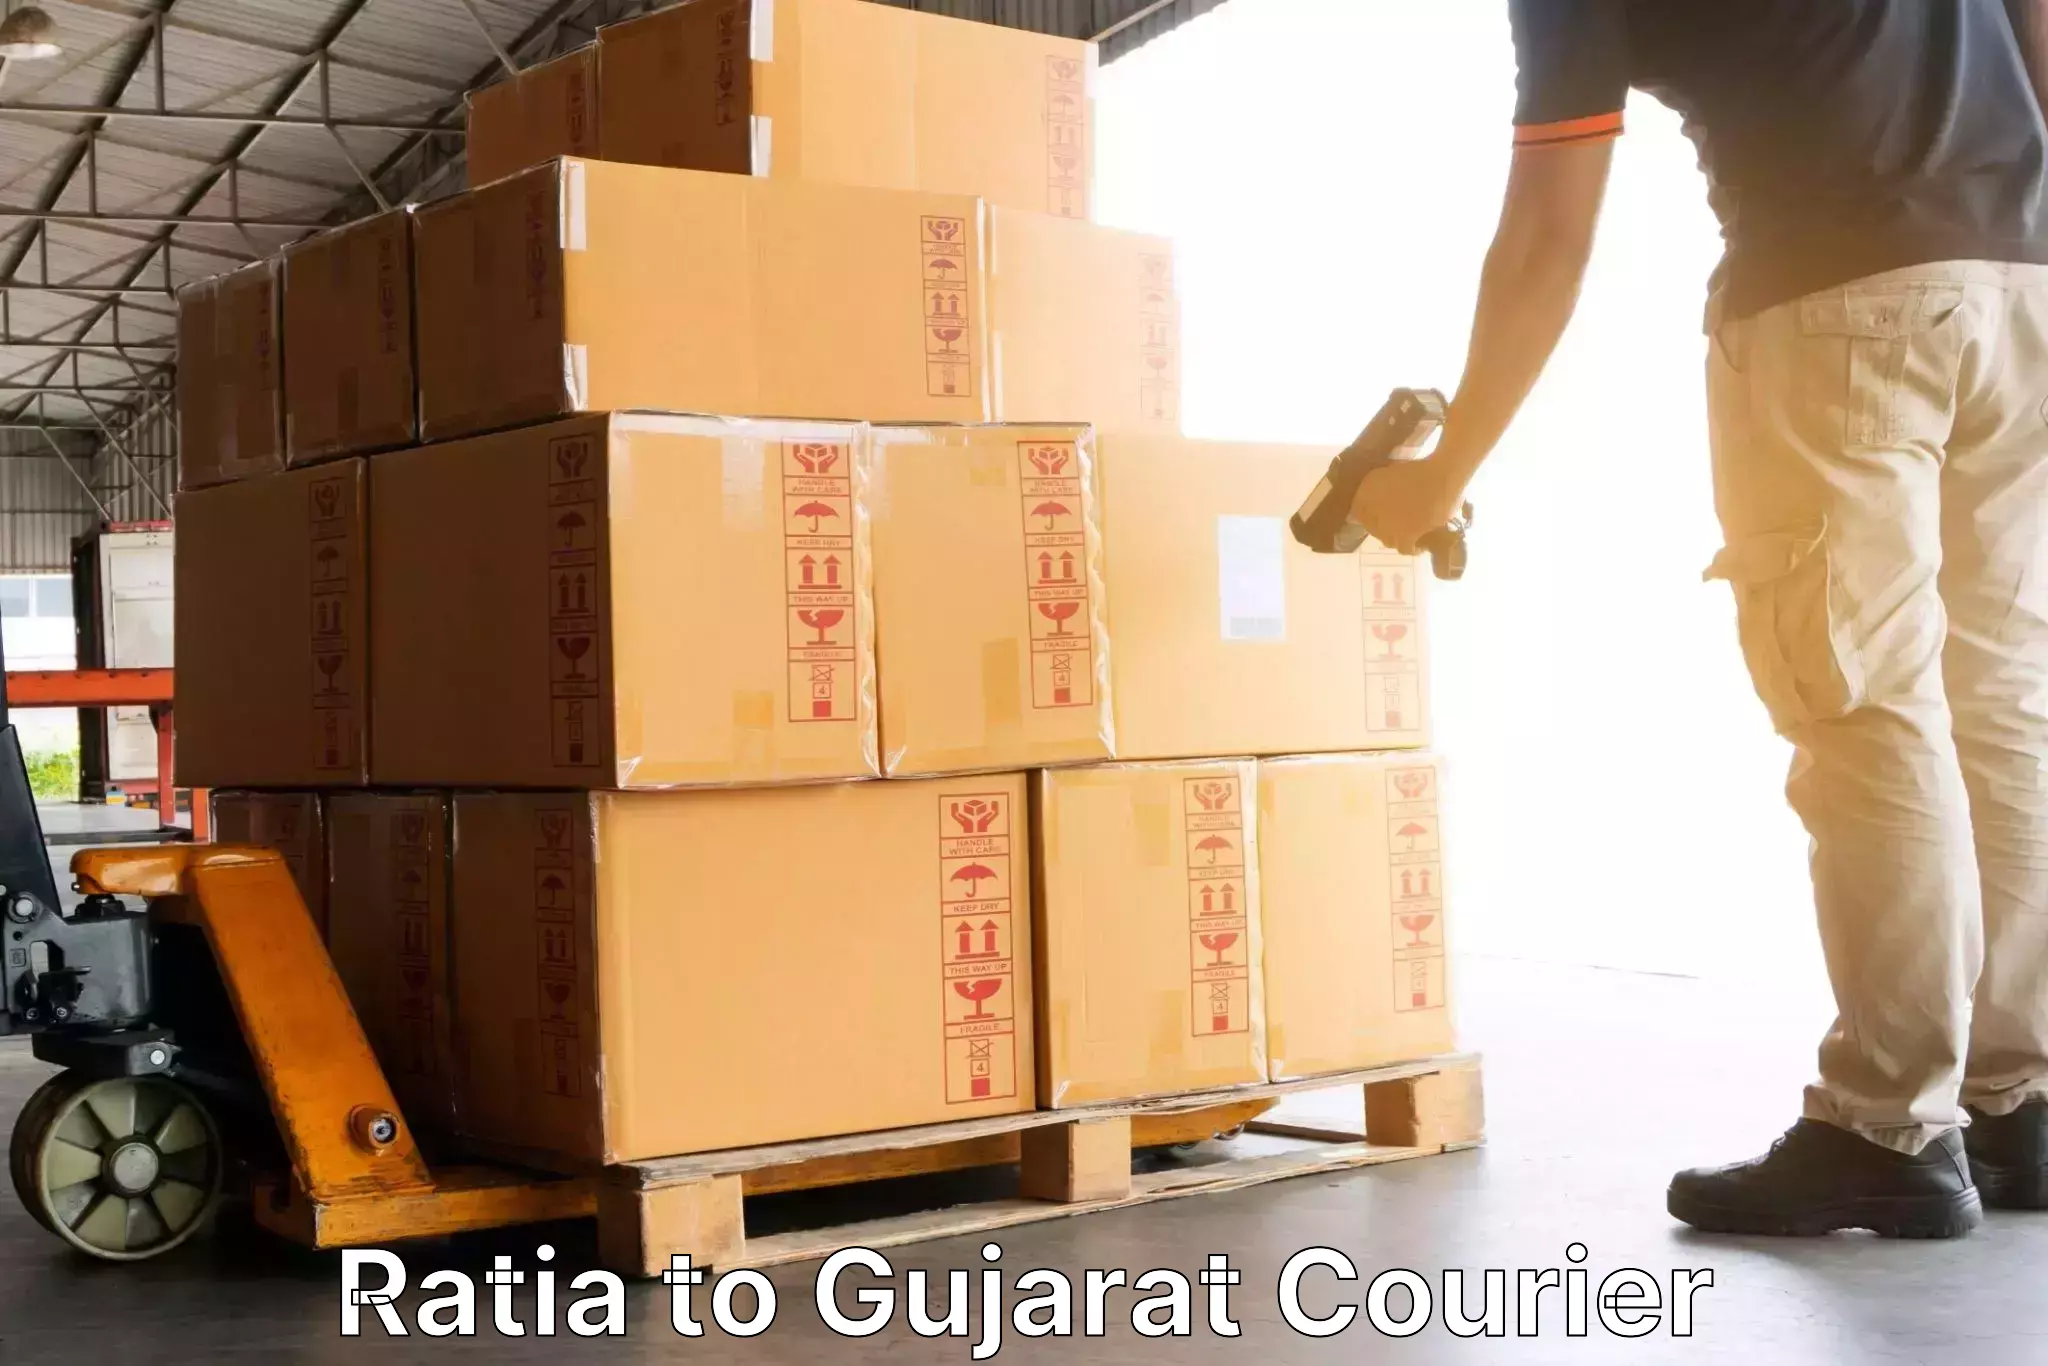 Courier service booking Ratia to Rajkot